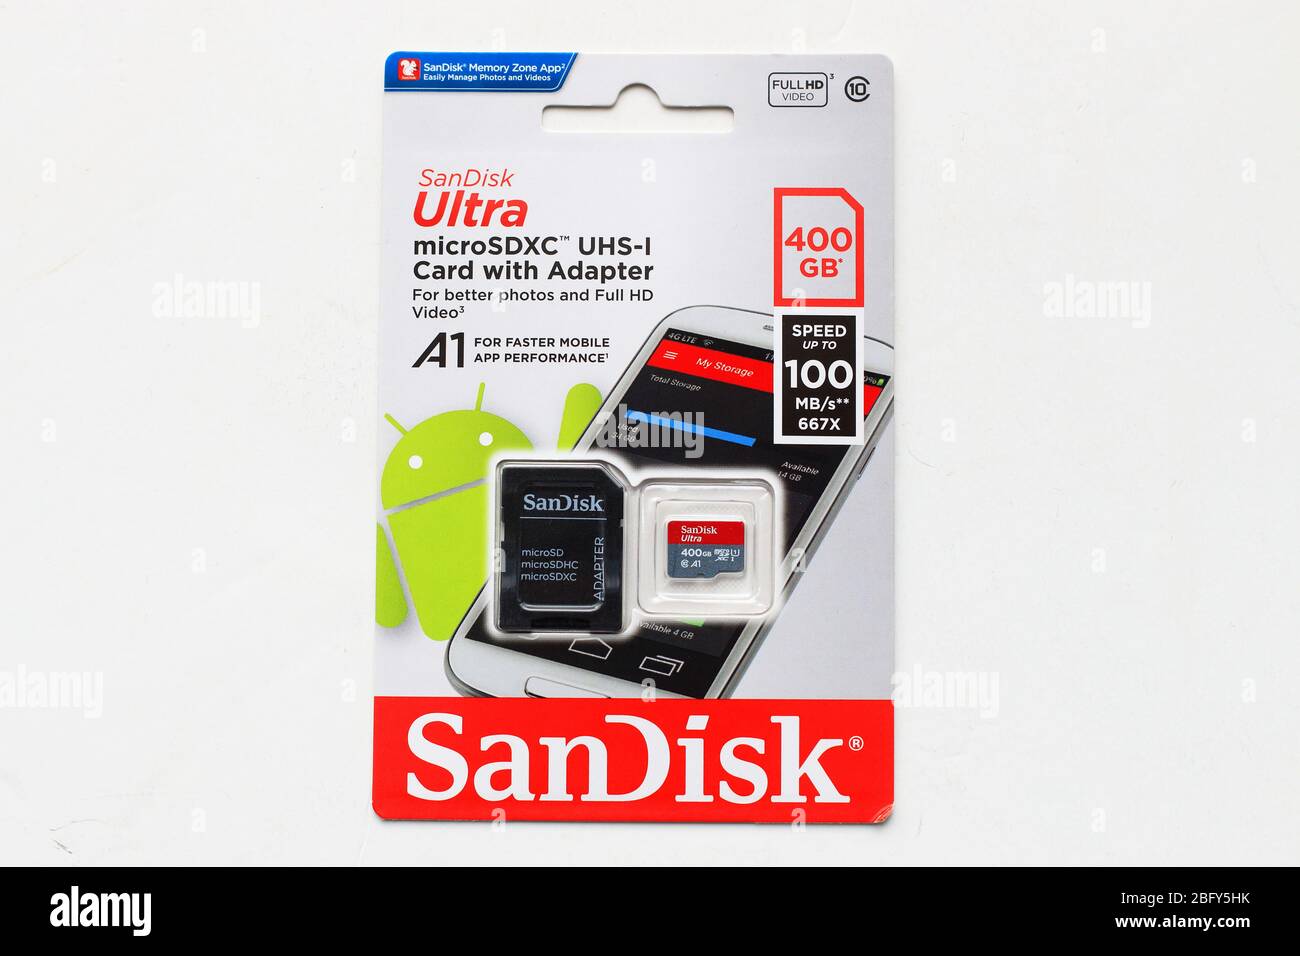 SANDISK SD EXTREME PRO 32GB (jusqu'à 100MB/S en lecture et 90MB/S